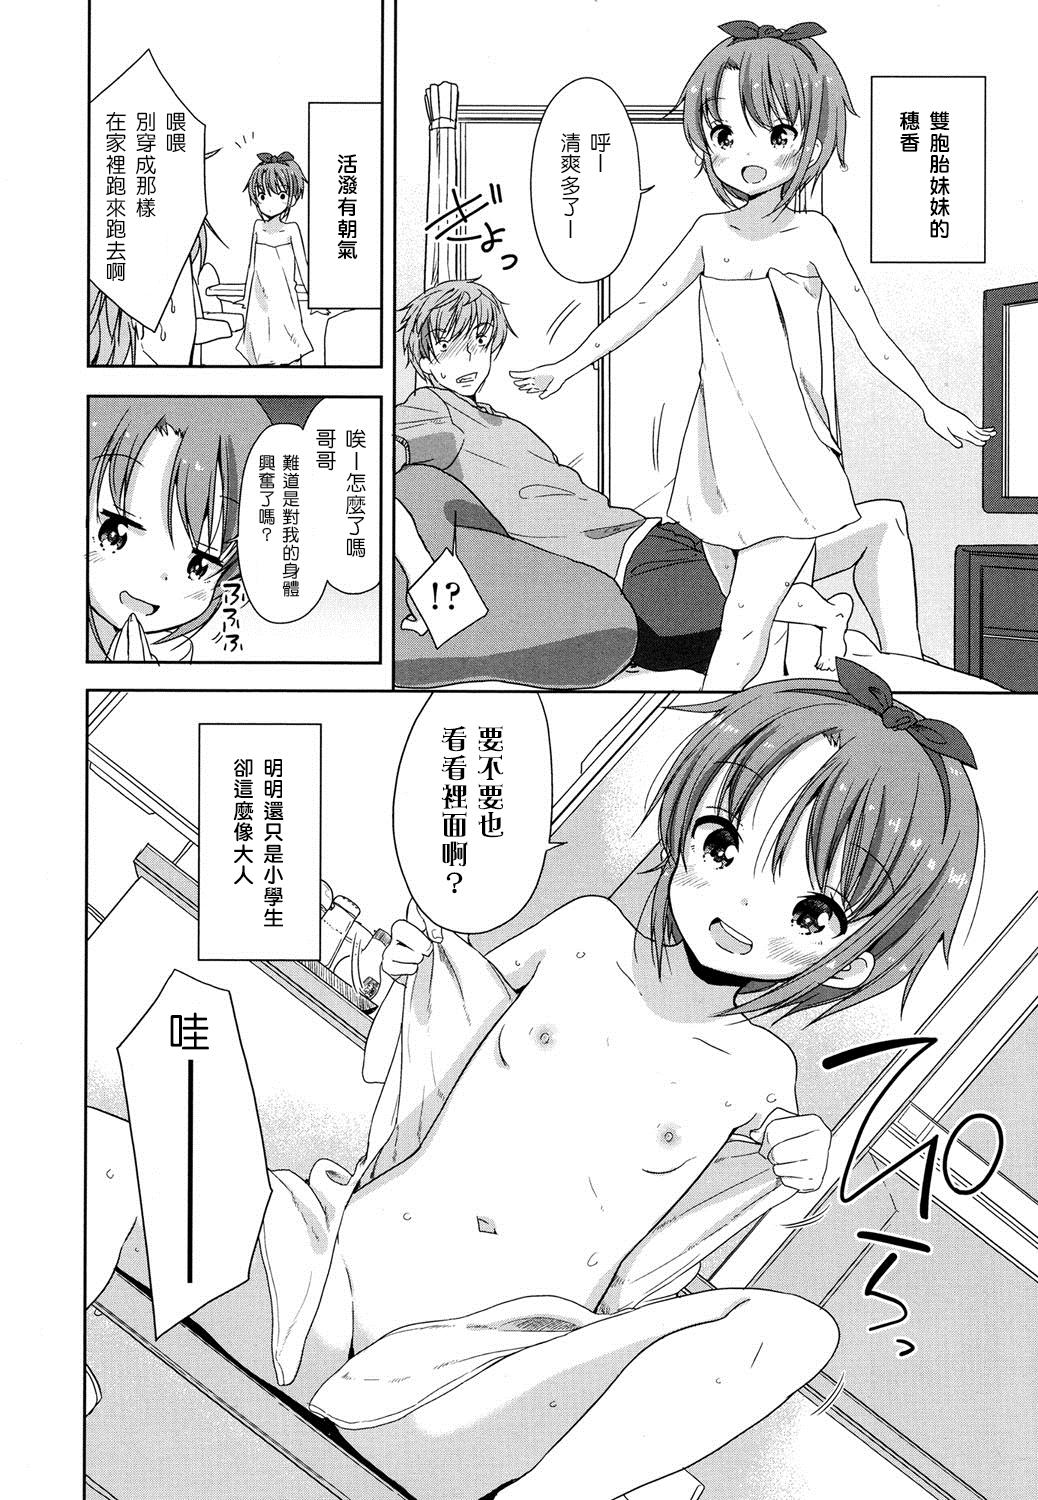 Three Some Onii-chan Ecchi Shiyo! British - Page 2